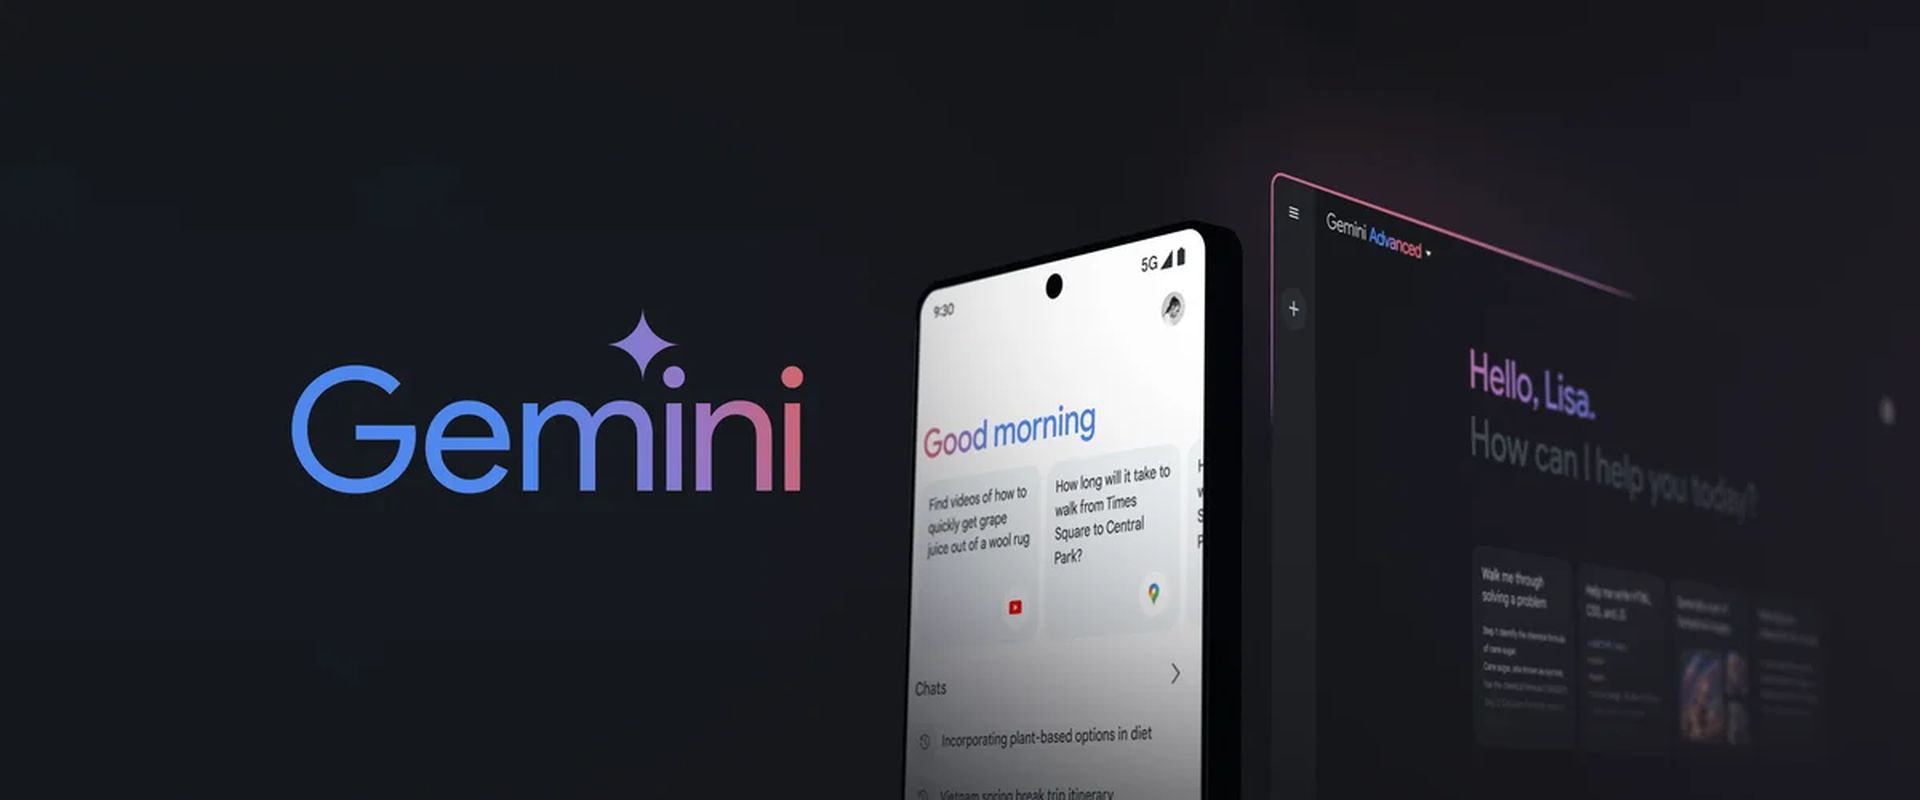 Google brengt iOS-exclusieve Gemini-functie naar Android